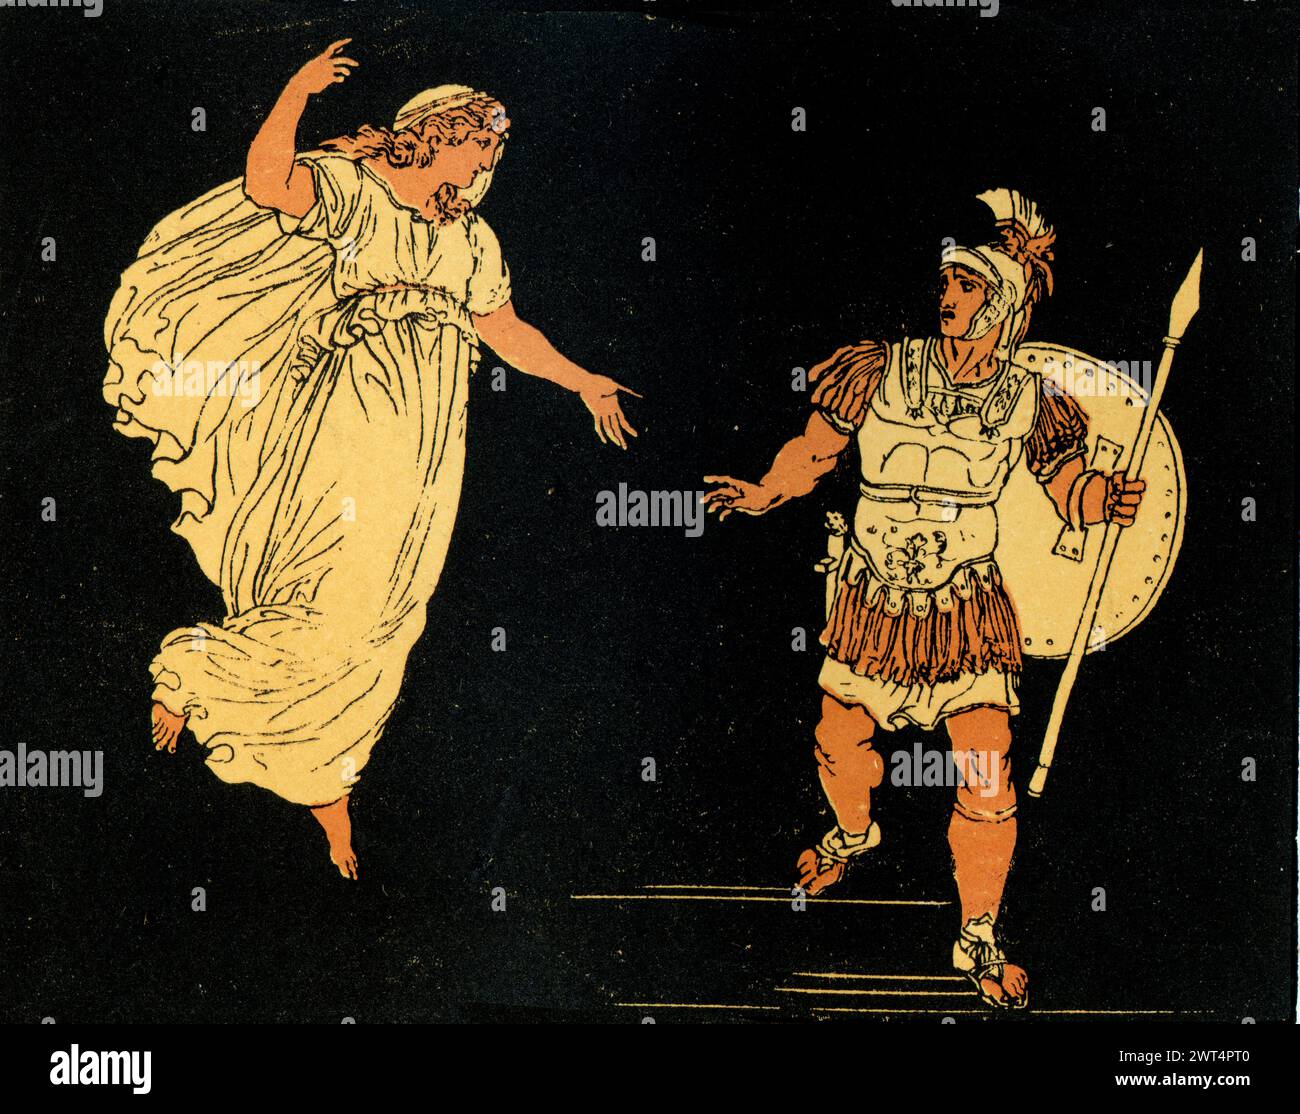 Enea illustrazione d'epoca e l'ombra di Creusa, scena dall'Eneide un poema epico latino che racconta la leggendaria storia di Enea, un troiano che fl Foto Stock